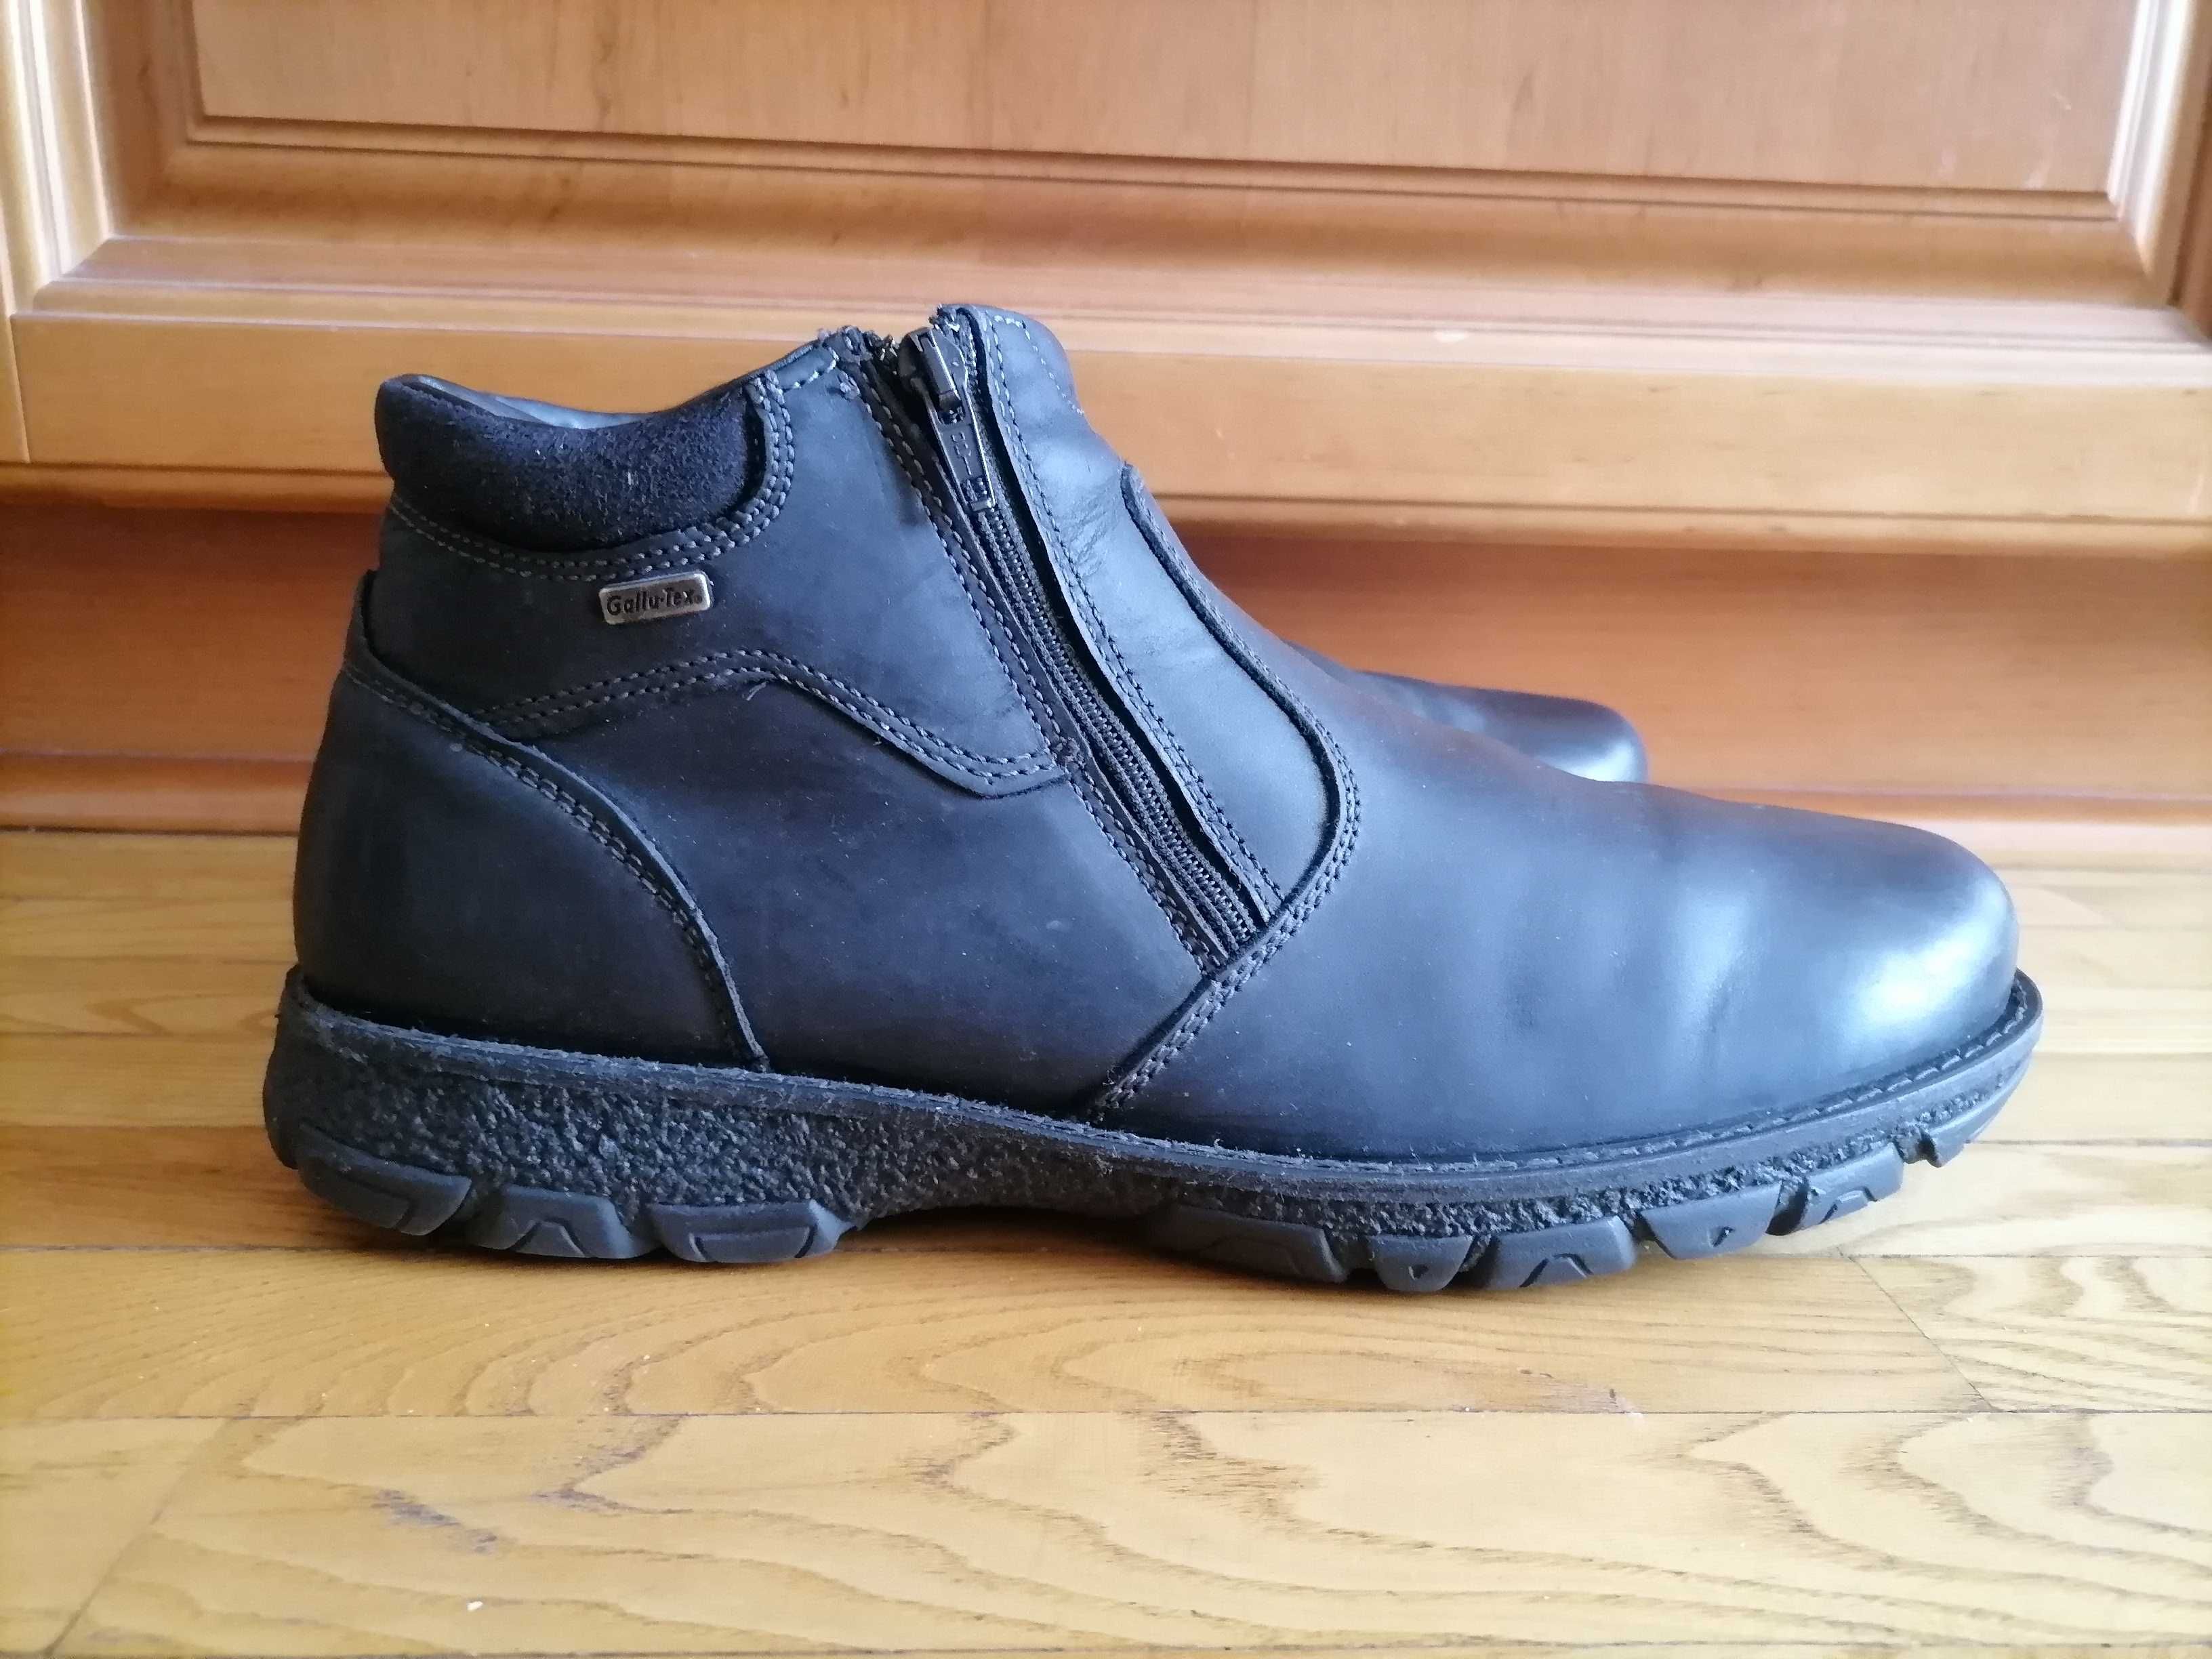 Кожаные зимние ботинки фирмы Gallus оригинал